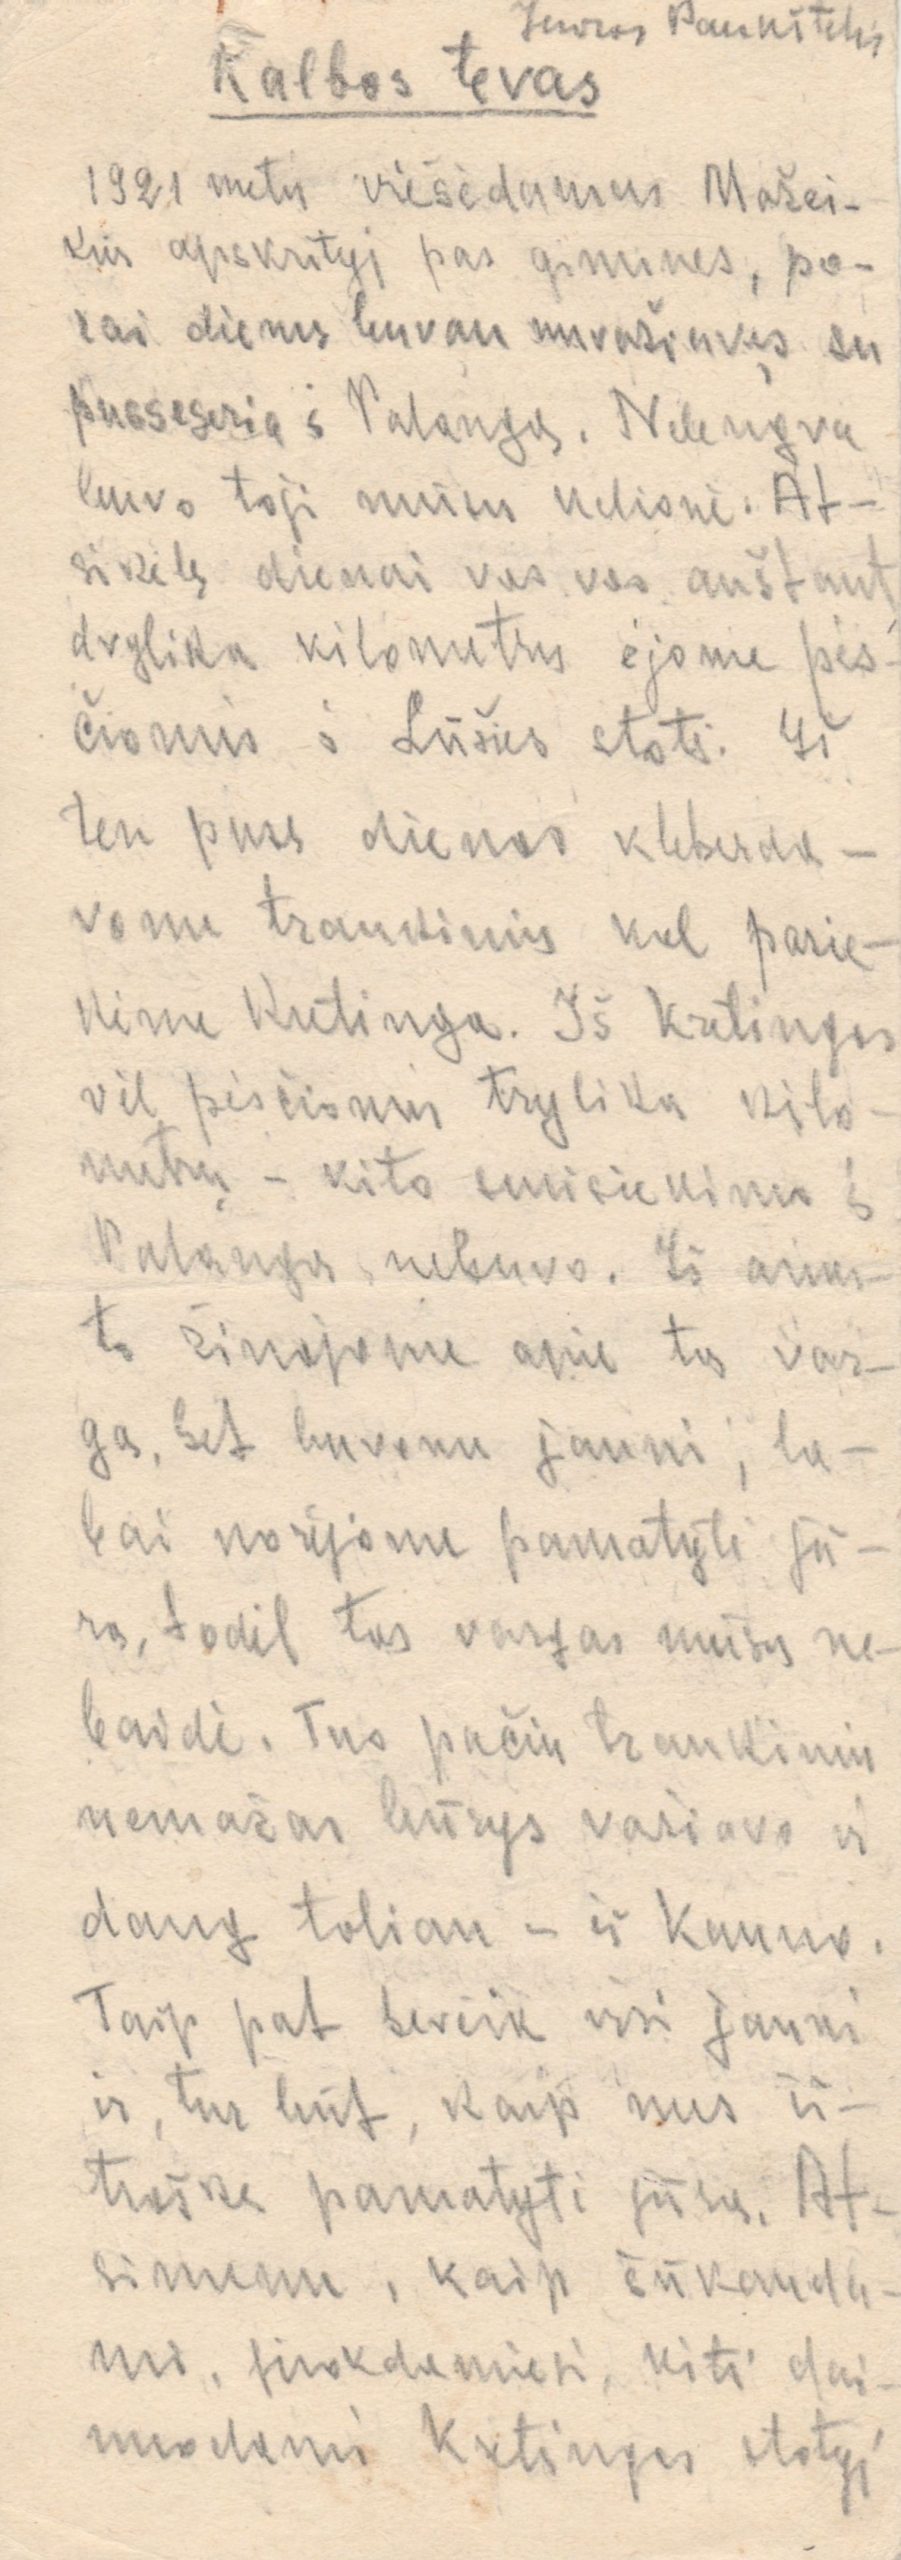 Juozo Paukštelio atsiminimų apie kalbininką J. Jablonskį „Kalbos tėvas” rankraštis. MLLM 19323